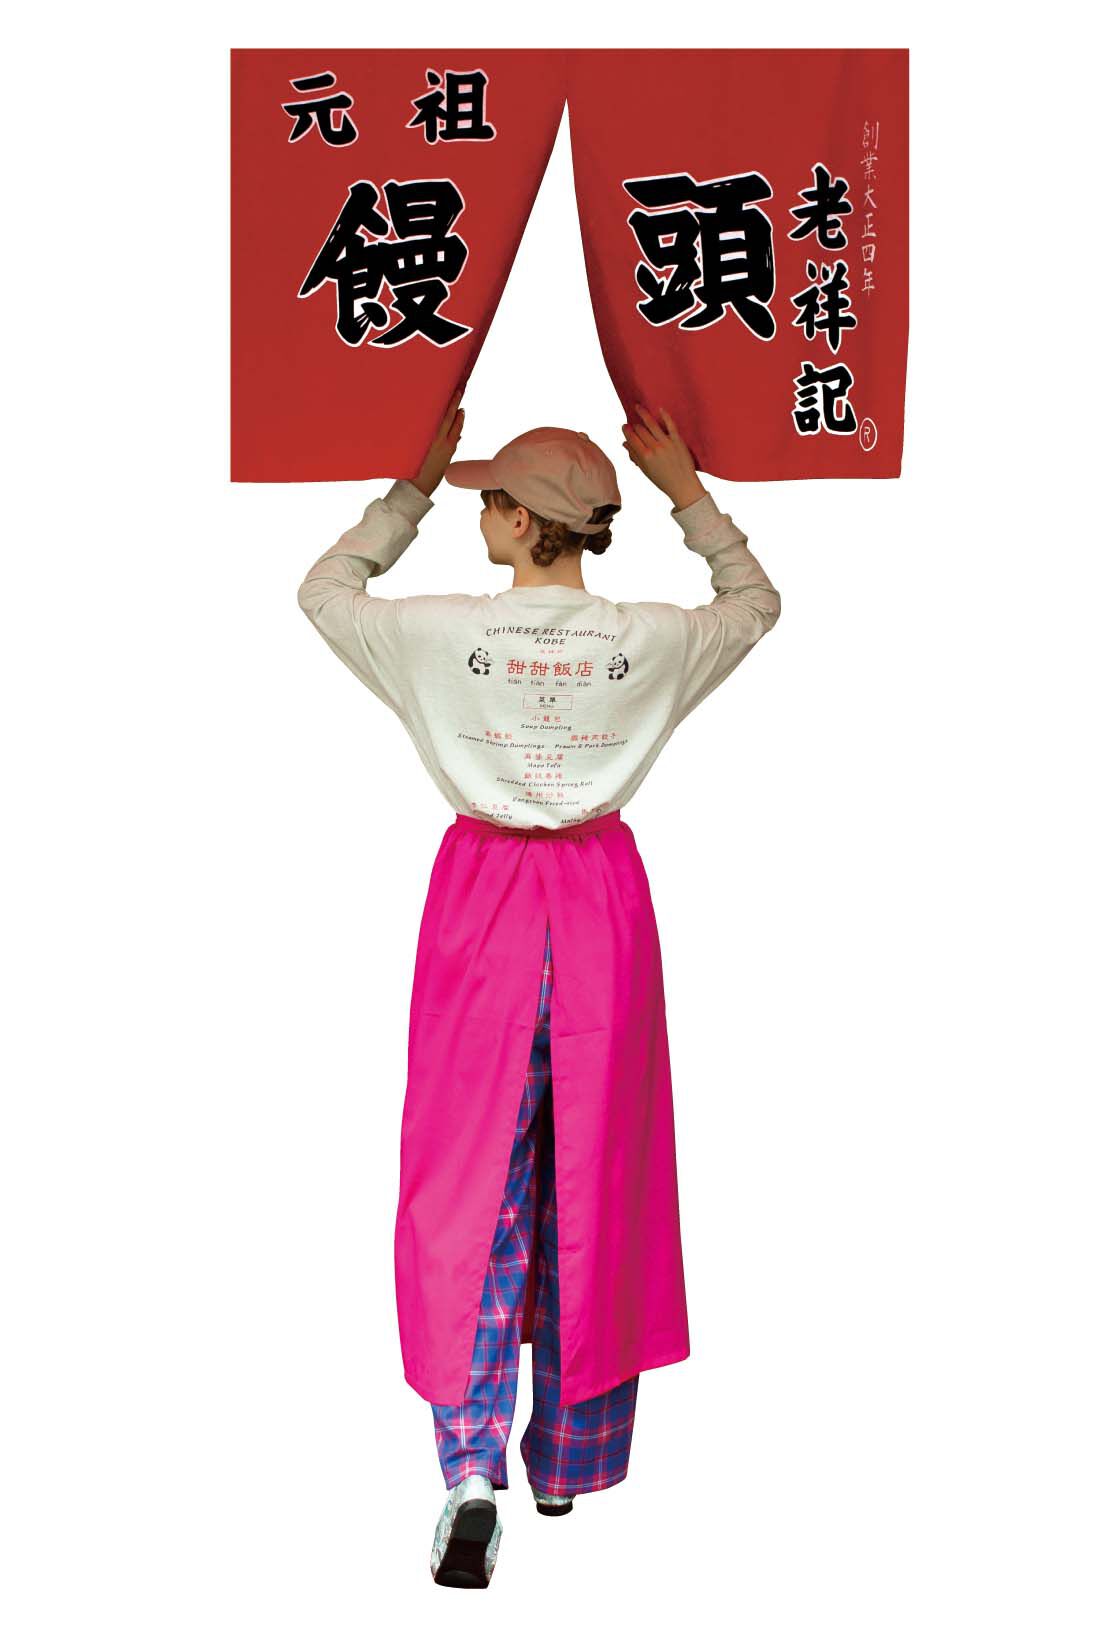 シロップ．|妄想中華食堂スタッフエプロン風巻きスカート